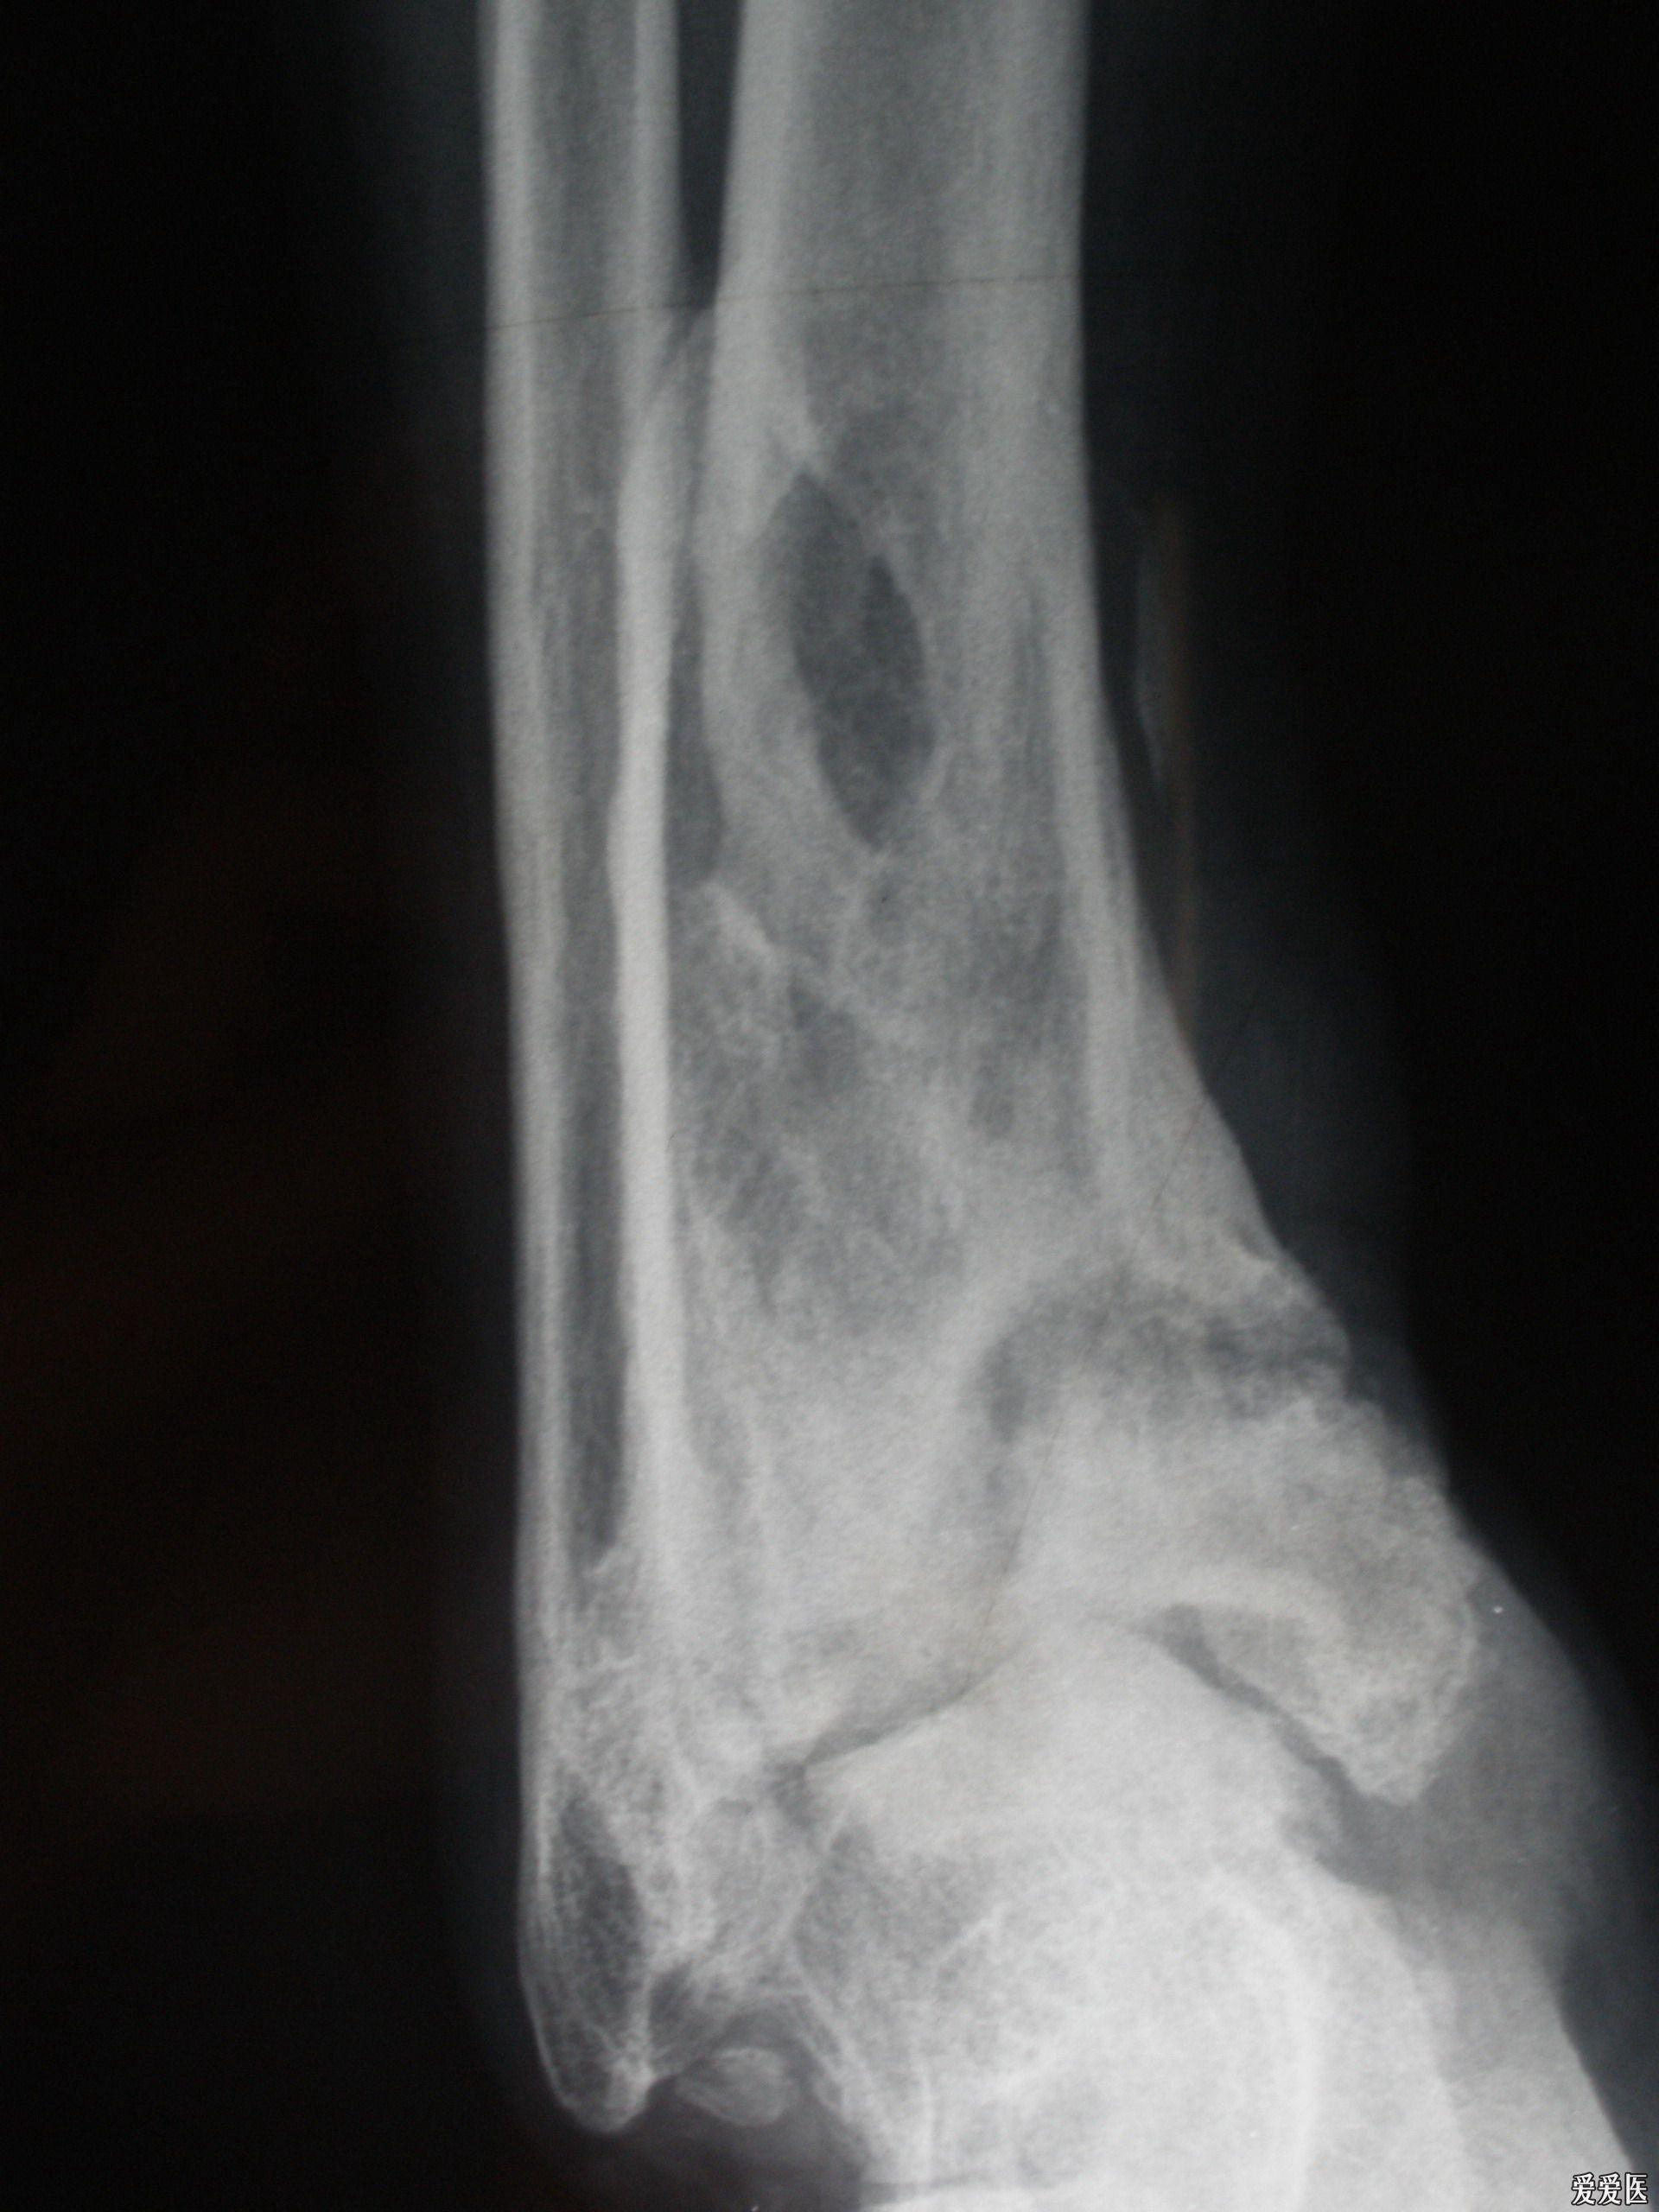 创伤性踝关节炎一例